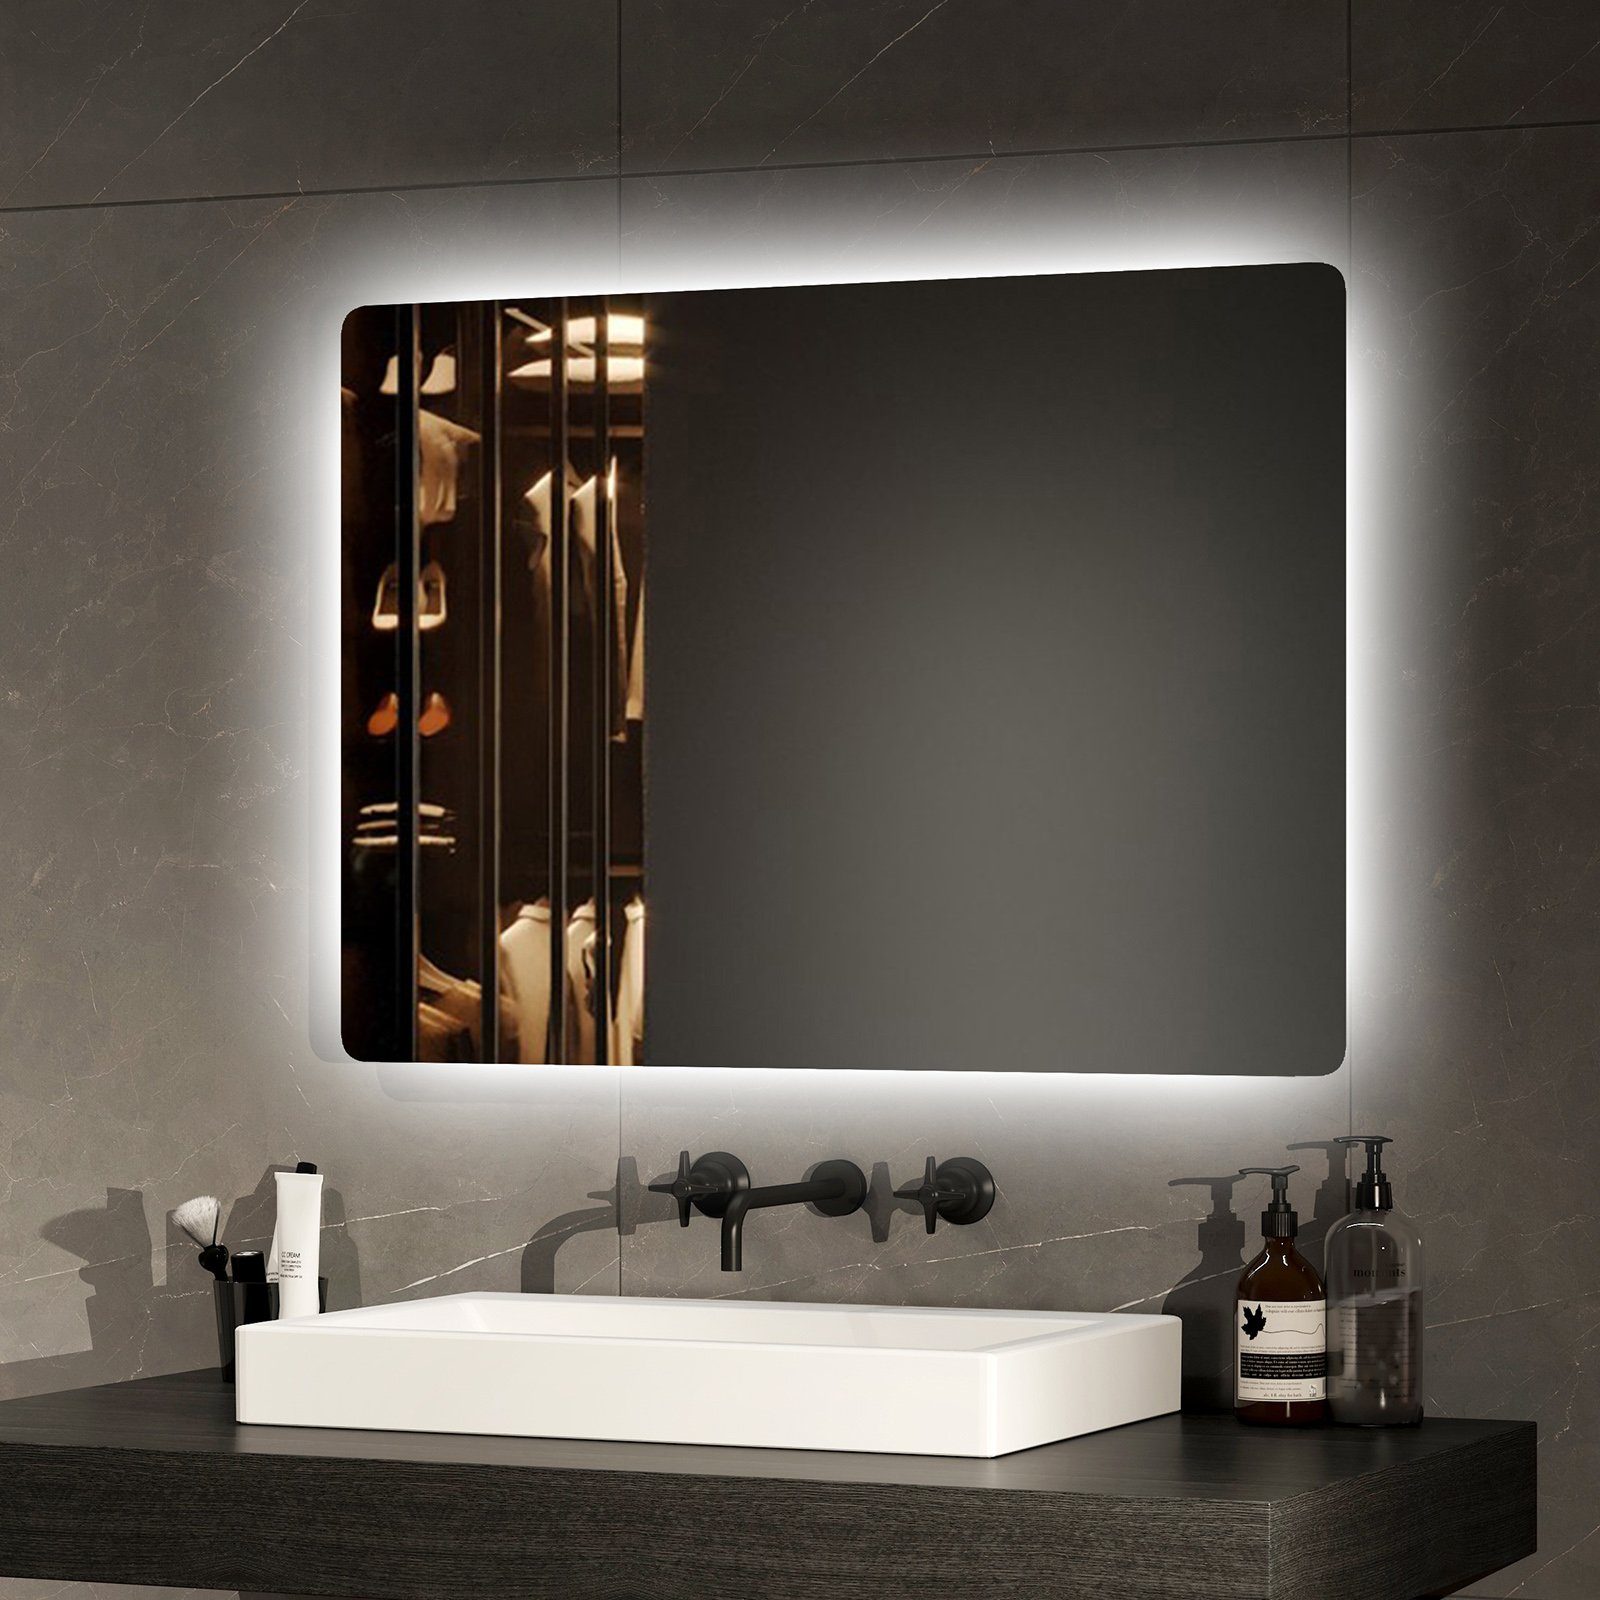 EMKE Badspiegel mit Beleuchtung Badezimmerspiegel Wandspiegel mit LED, Kaltweißes Licht 6500K 70-80cm